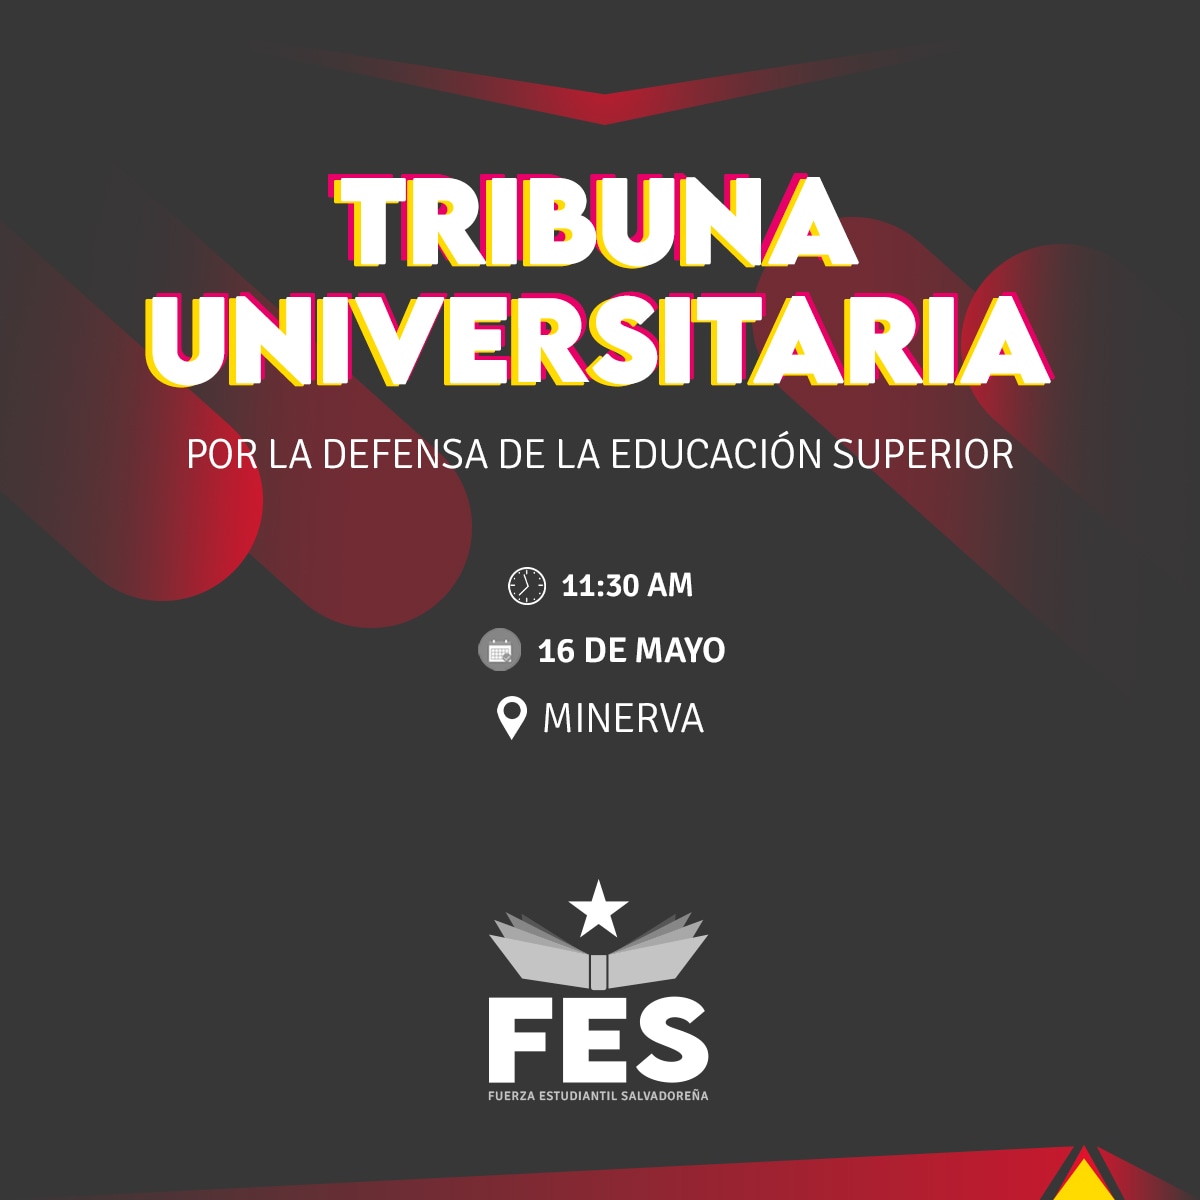 El próximo jueves ante la situación actual de la Universidad de El Salvador te invitamos a que te sumes a la Tribuna Universitaria por la Defensa de la Educación Superior para todas y todos.

#PresupuestoYa #AutonomíaUes